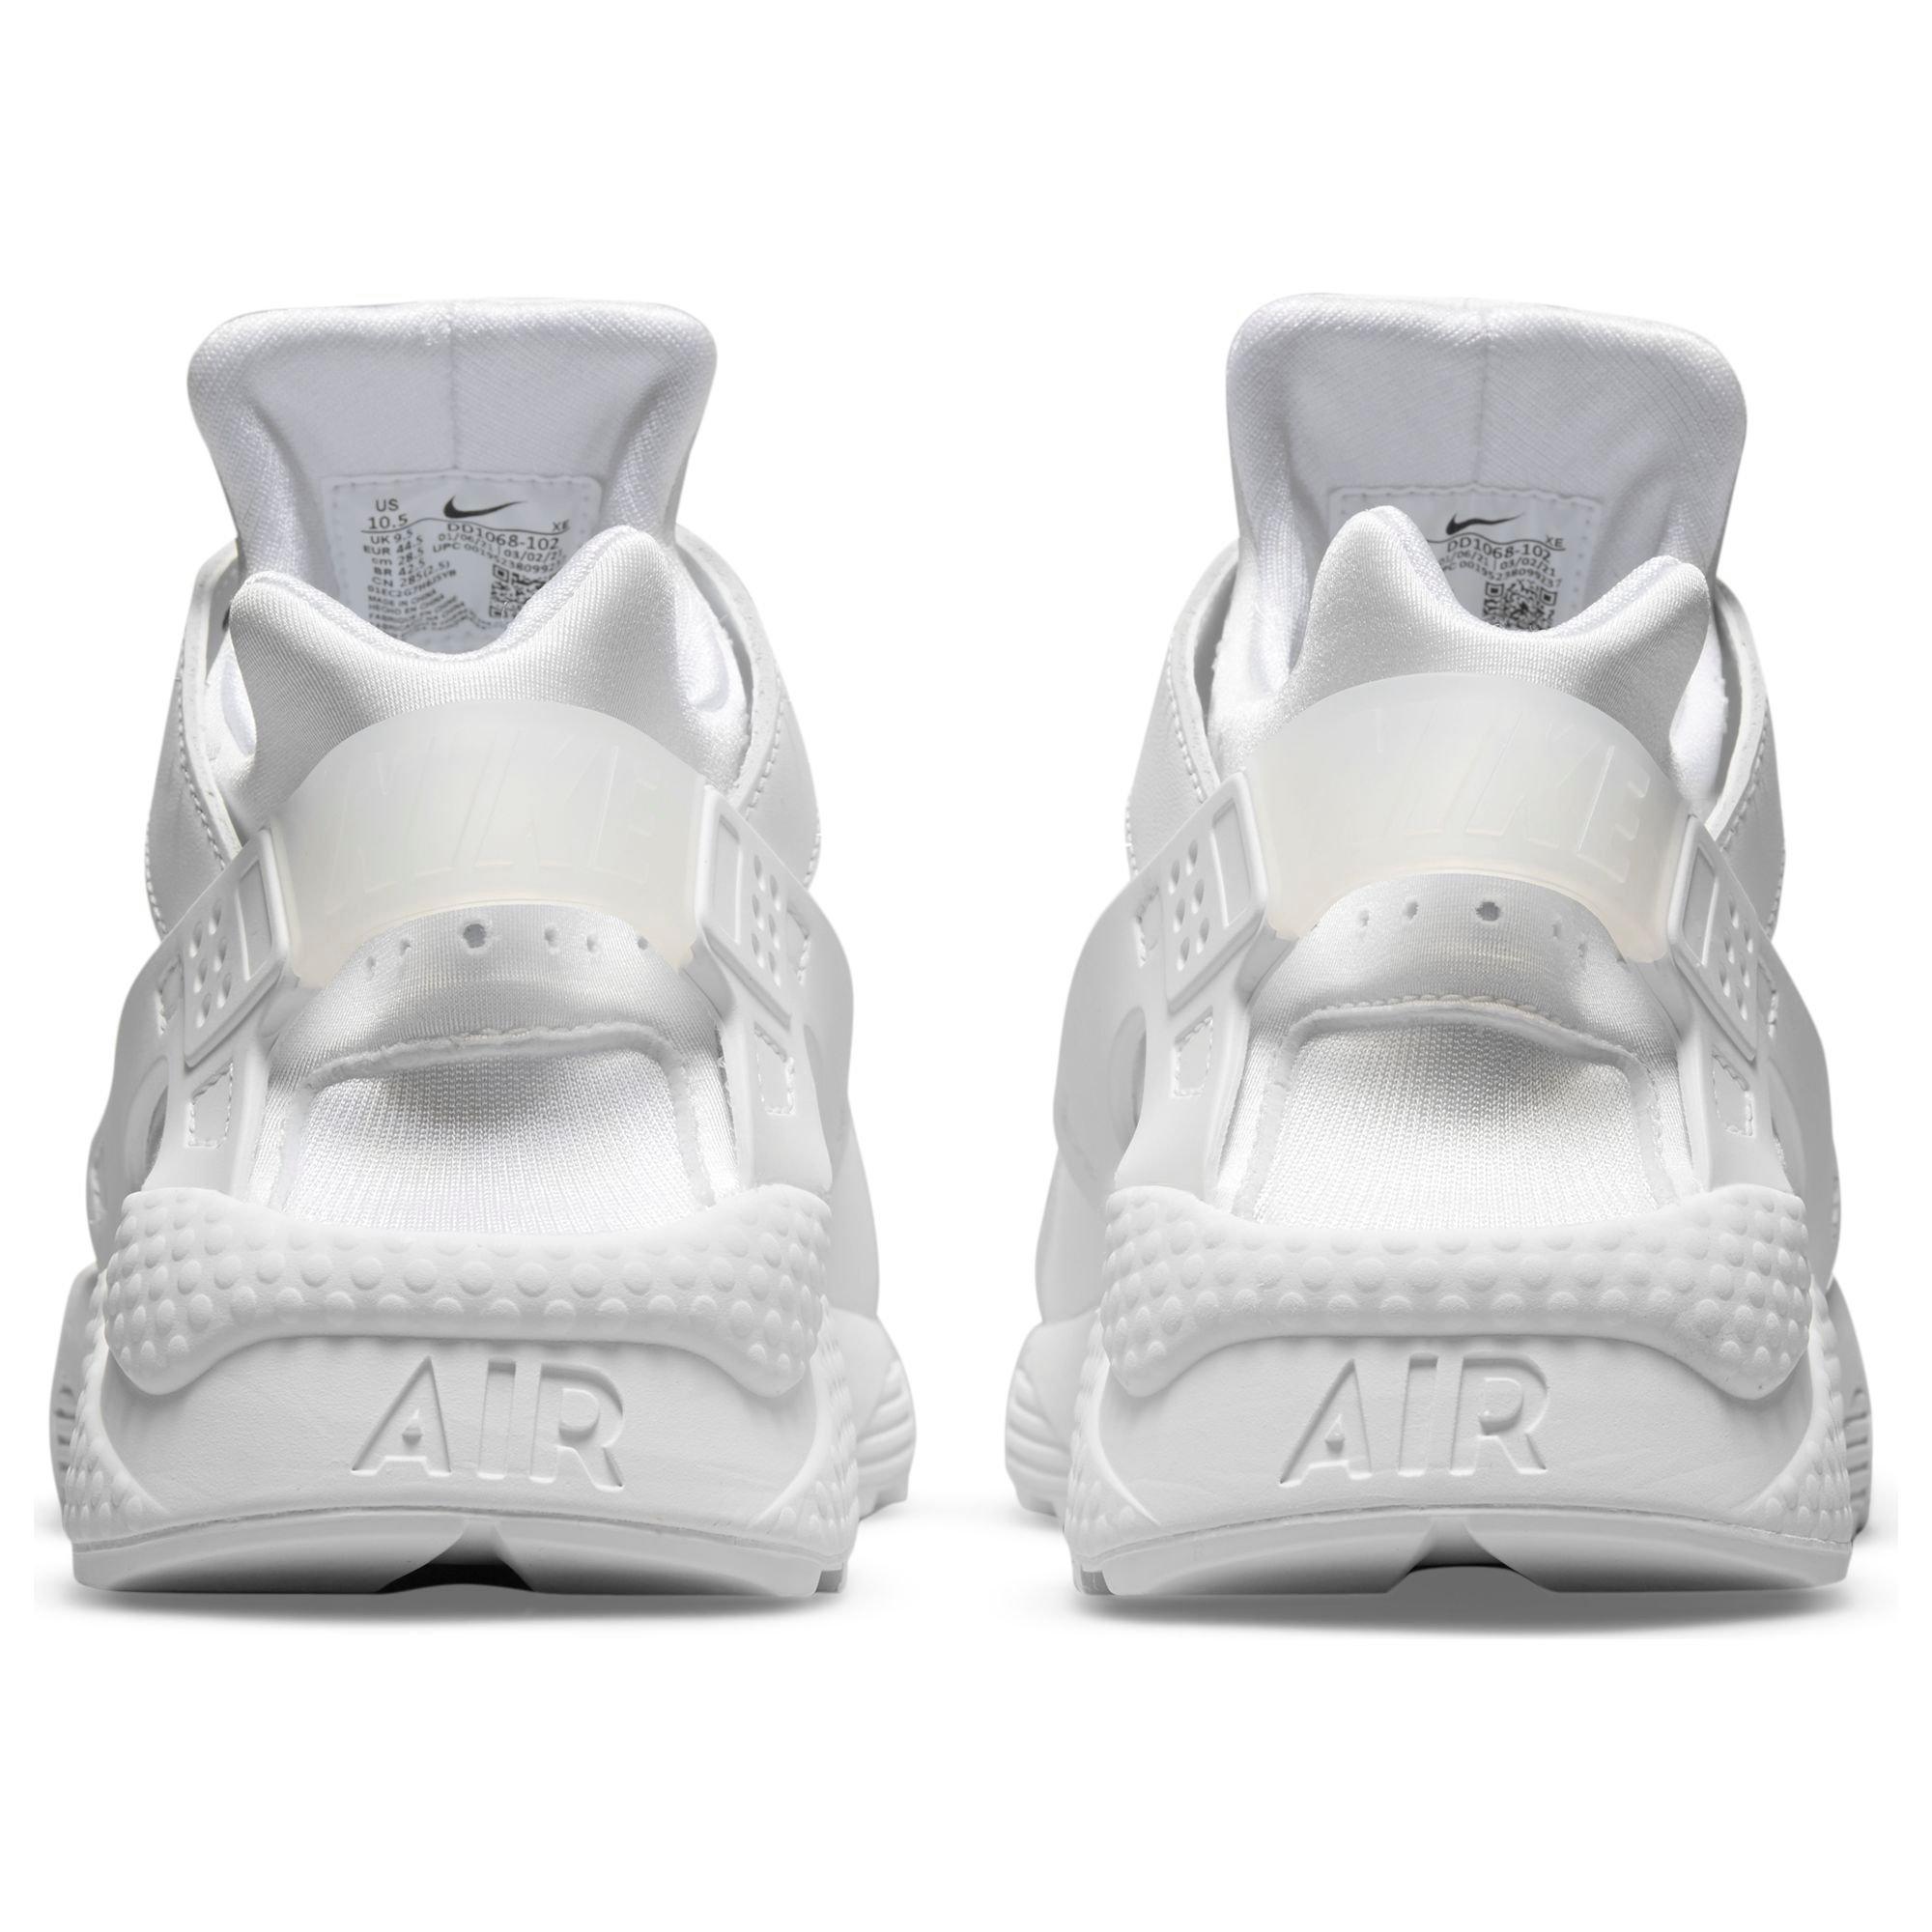 Nike Air Huarache White Gum - Size 9.5 Men